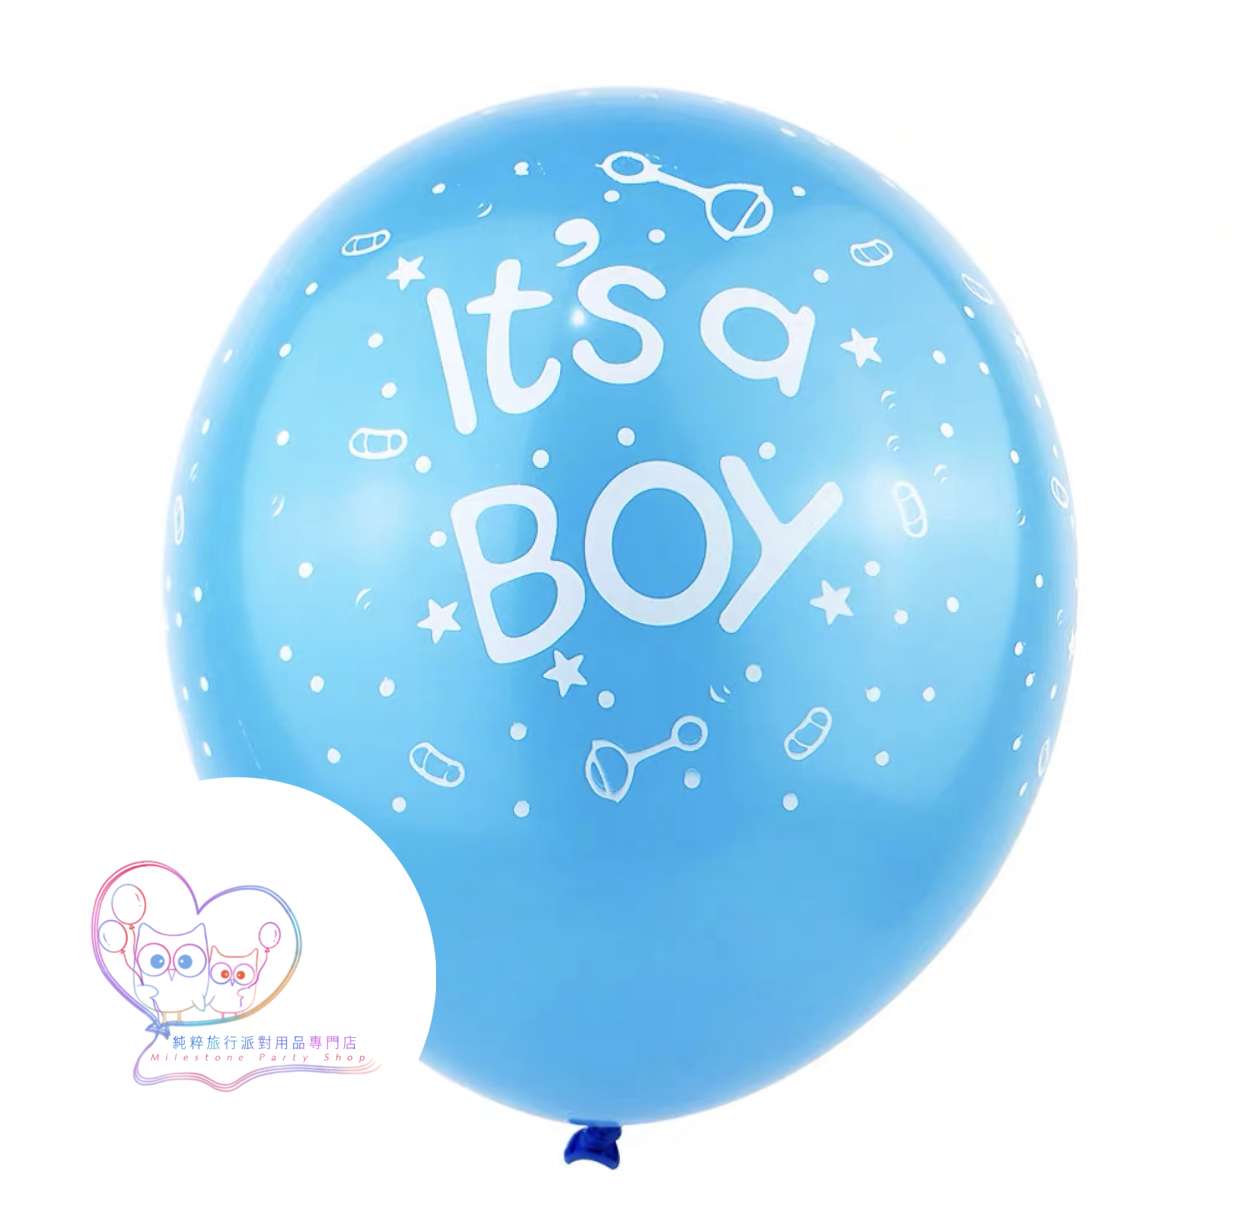 12吋乳膠氣球 (Its a Boy) (粉藍色) LBBA2-2